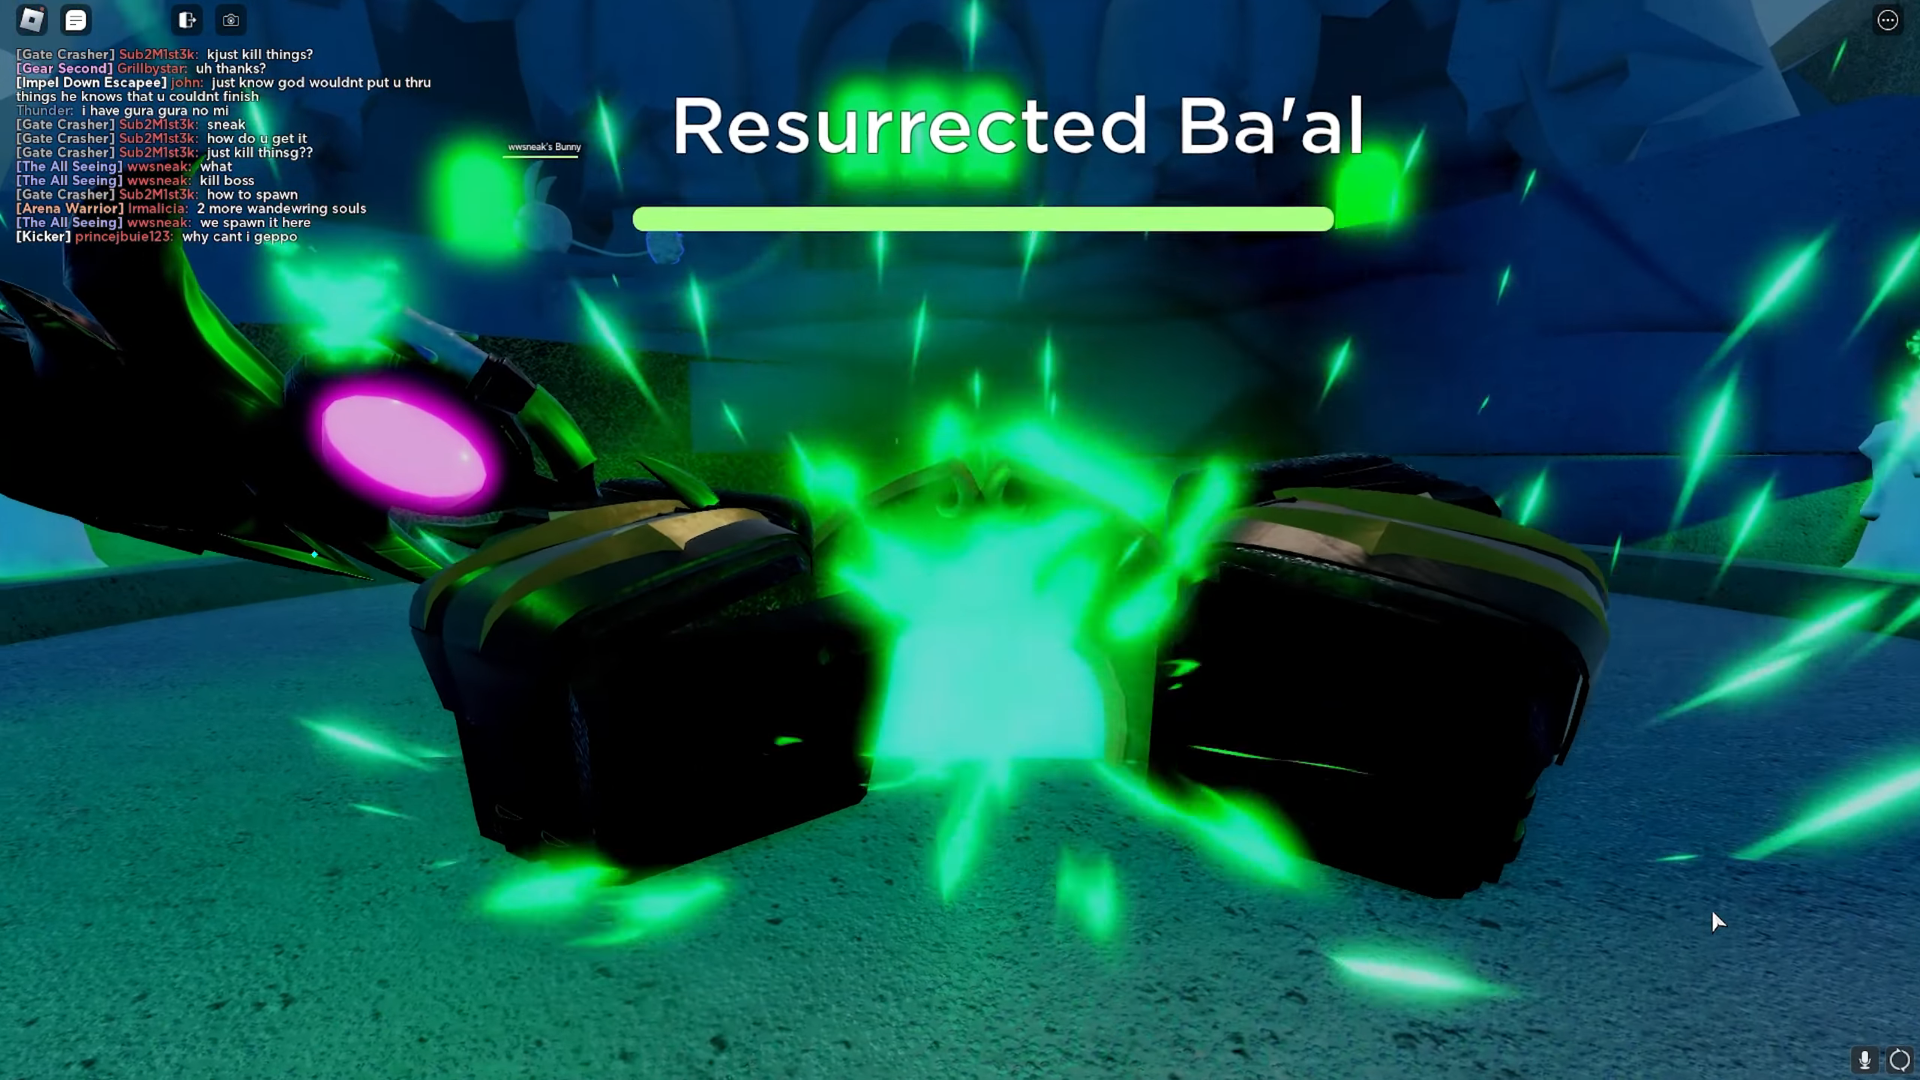 resurrected baal gpo